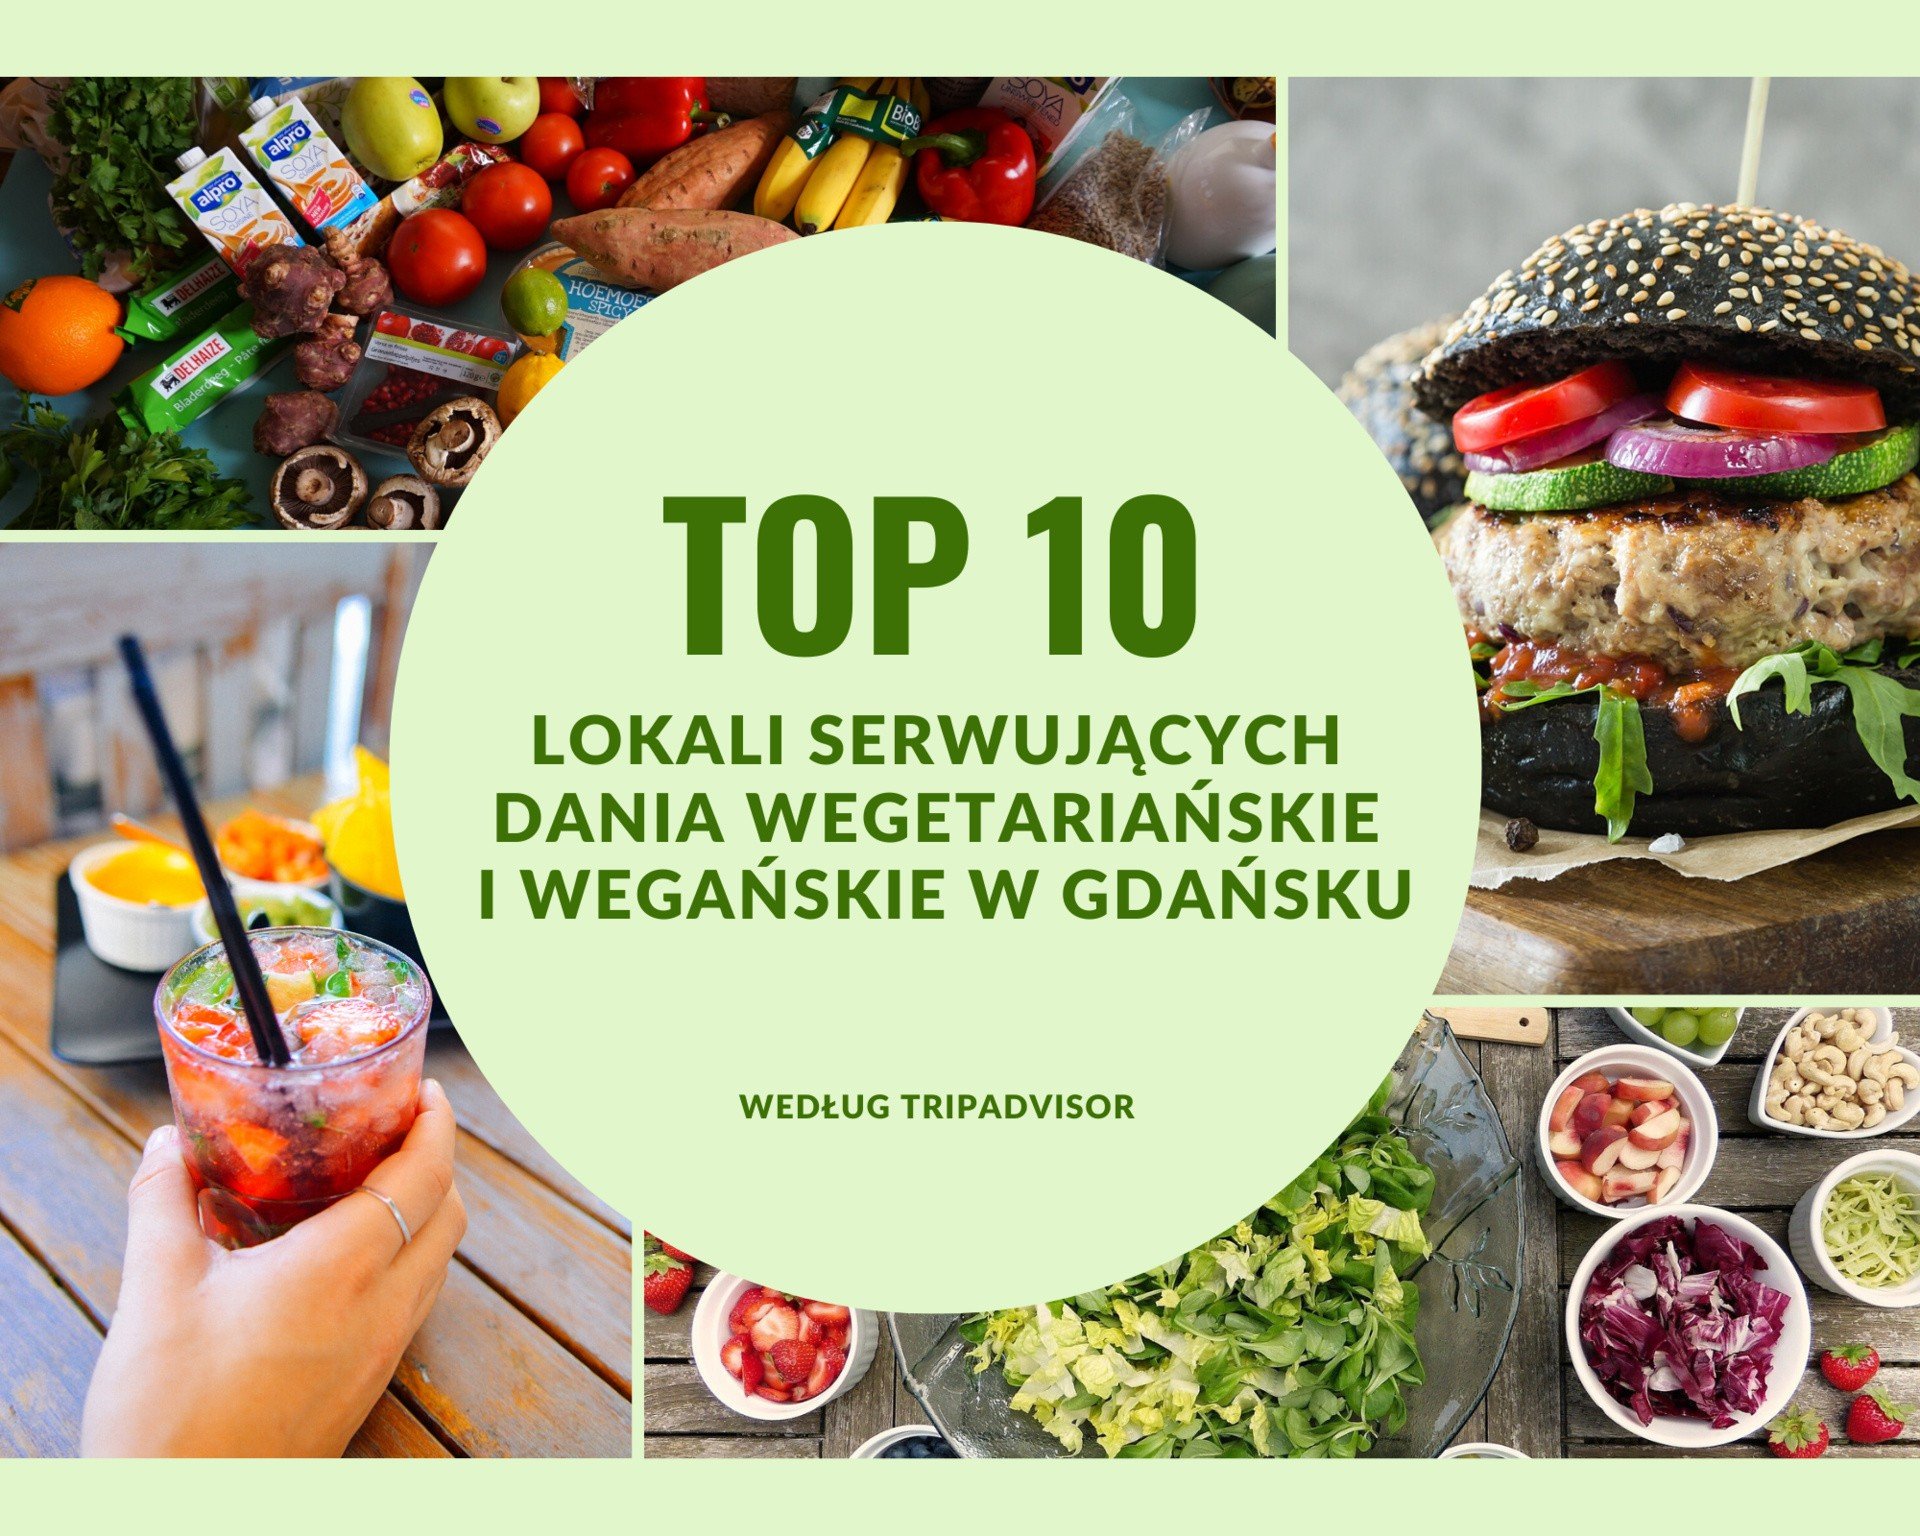 Restauracje serwujące wegetariańskie i wegańskie dania w Gdańsku. Top